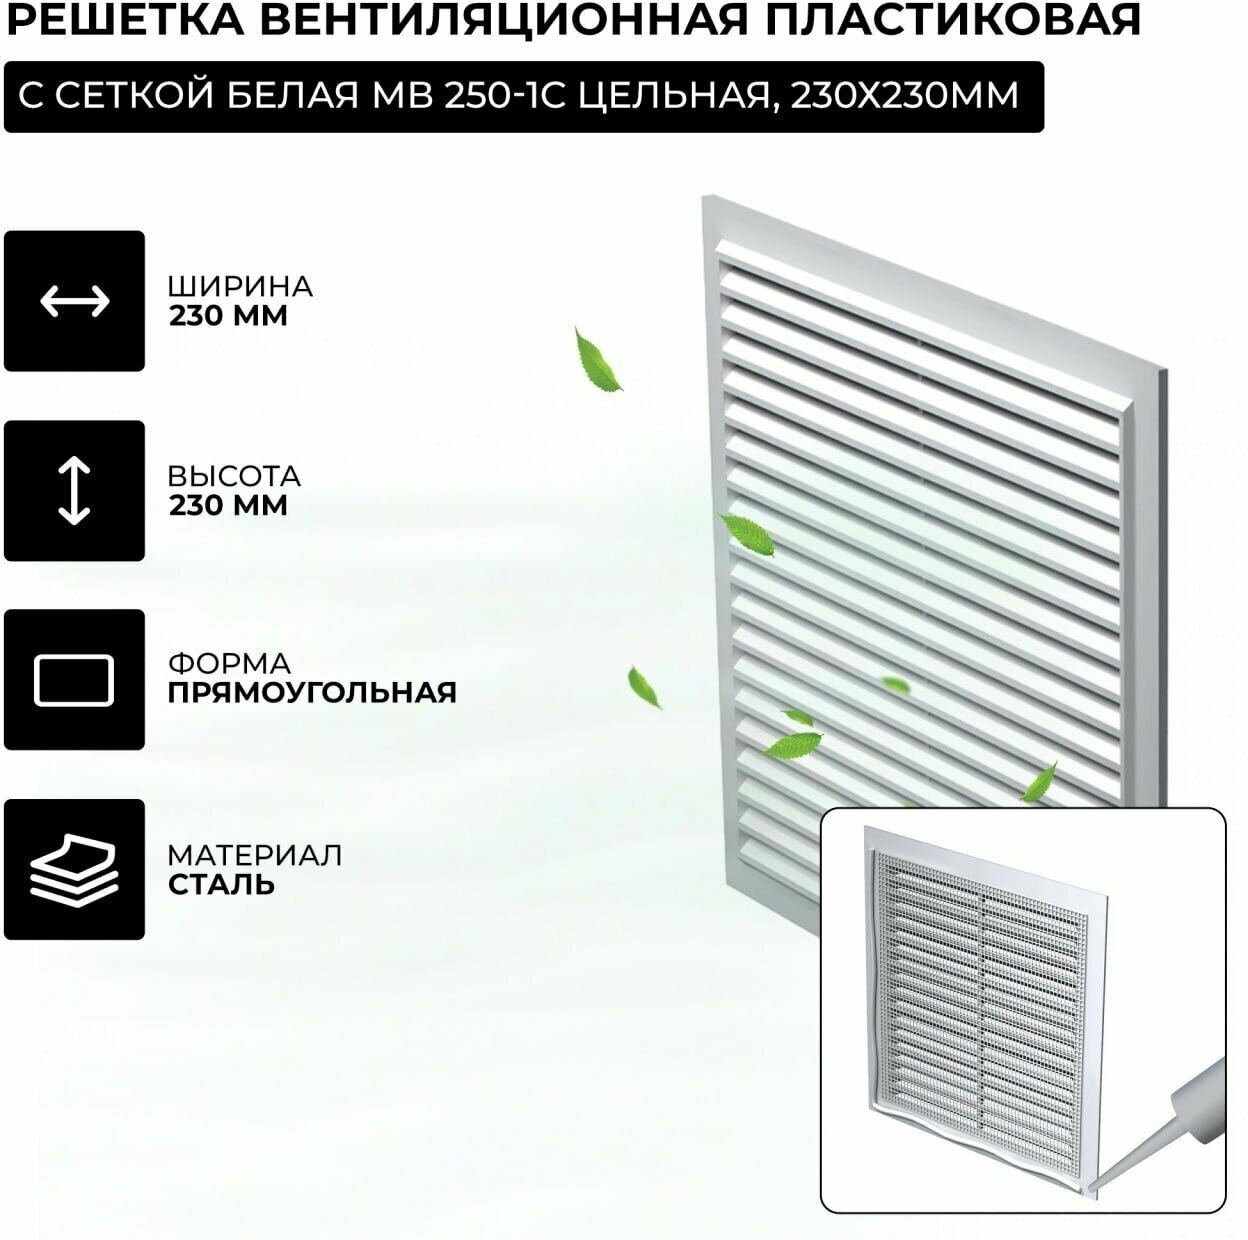 Решетка вентиляционная пластиковая, с сеткой белая МВ 250-1с цельная, 230х230мм - фотография № 4